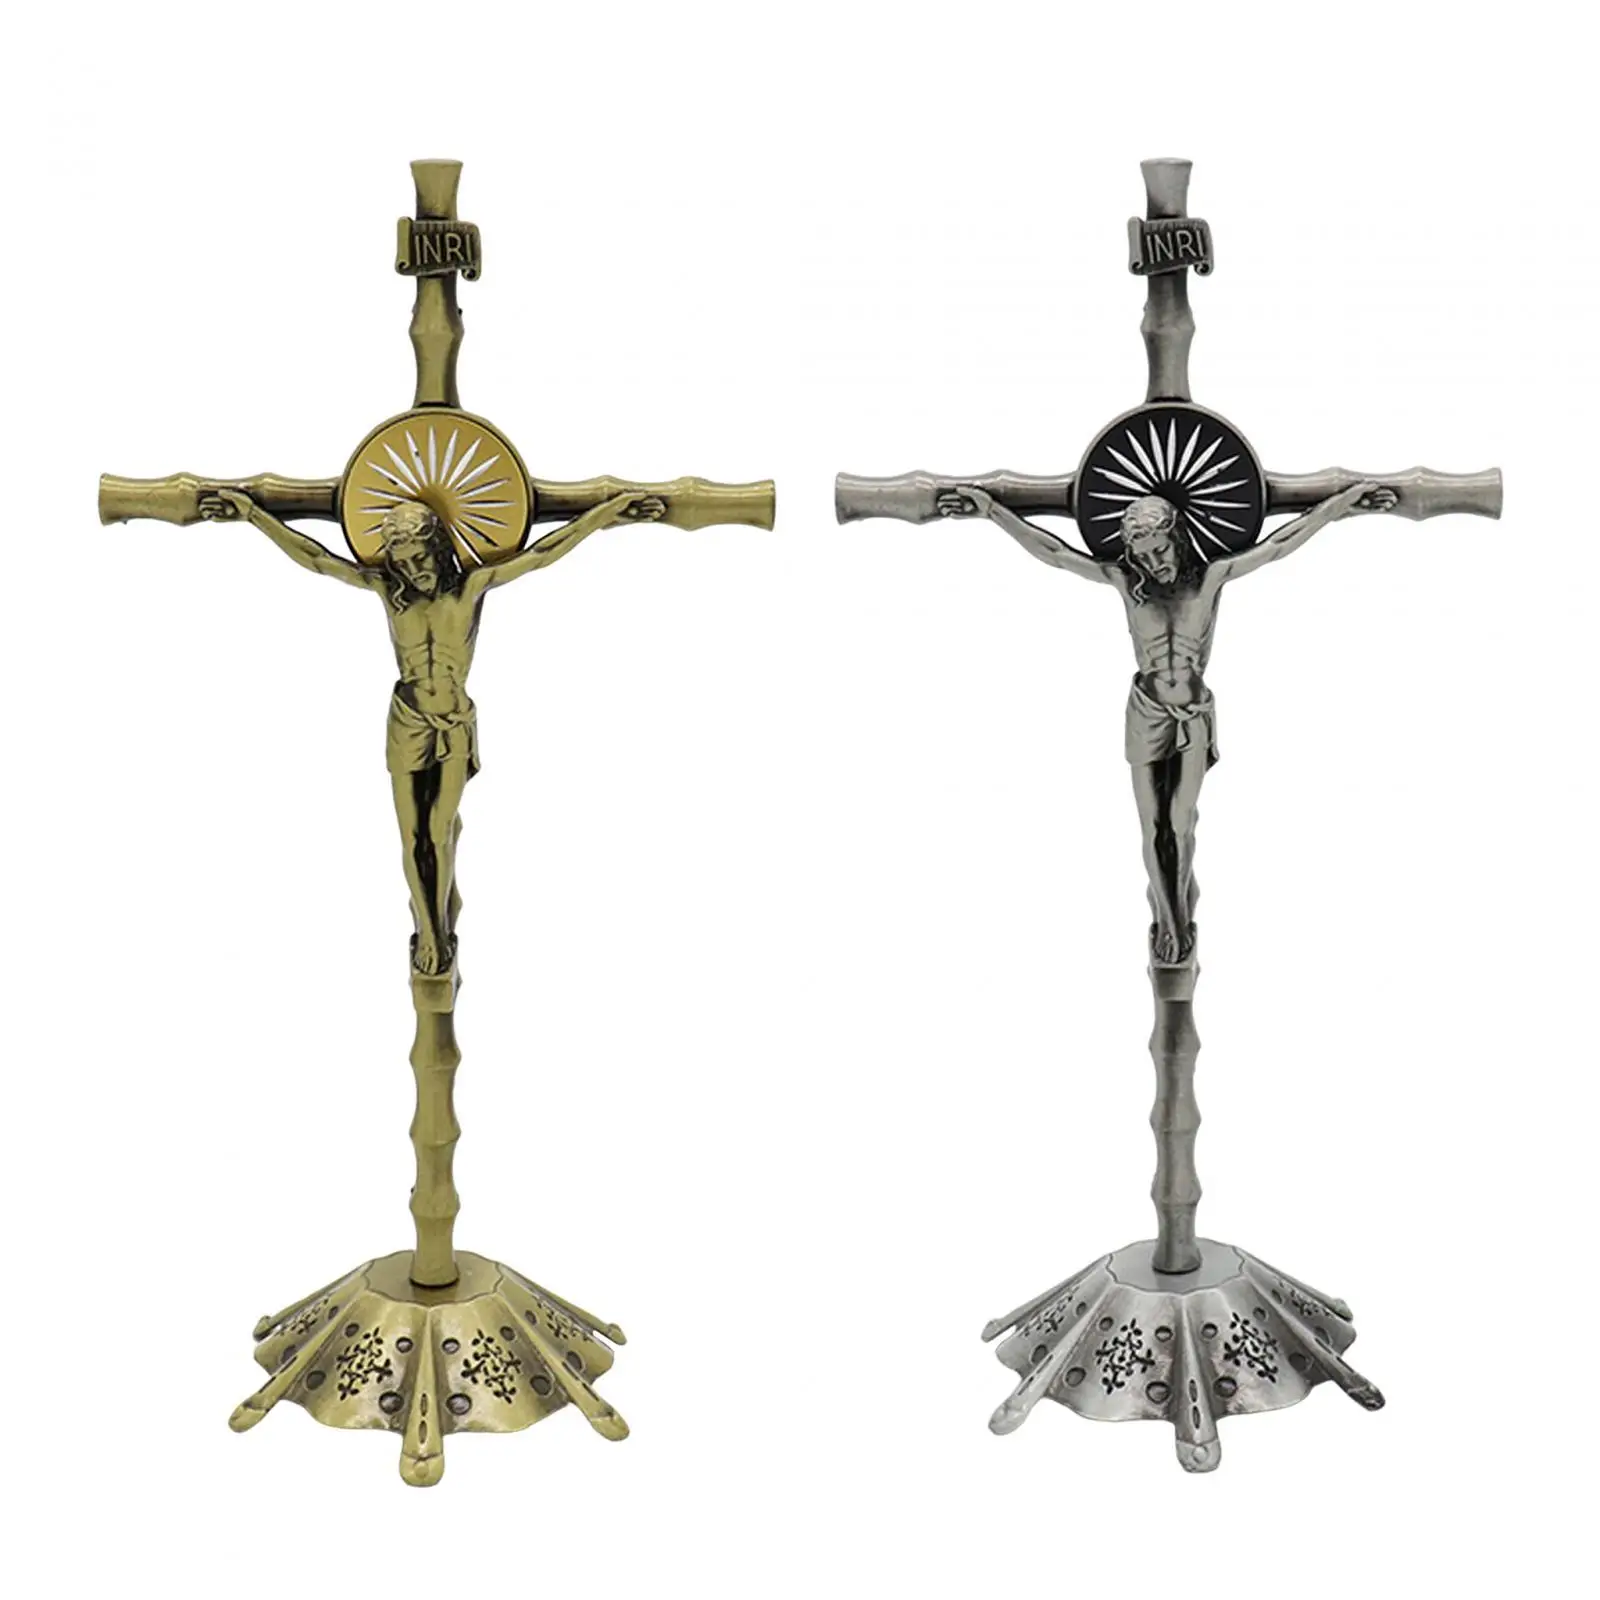 Crucifix Figurine Crucifix, Wall Cross Statue, Miniature Religious